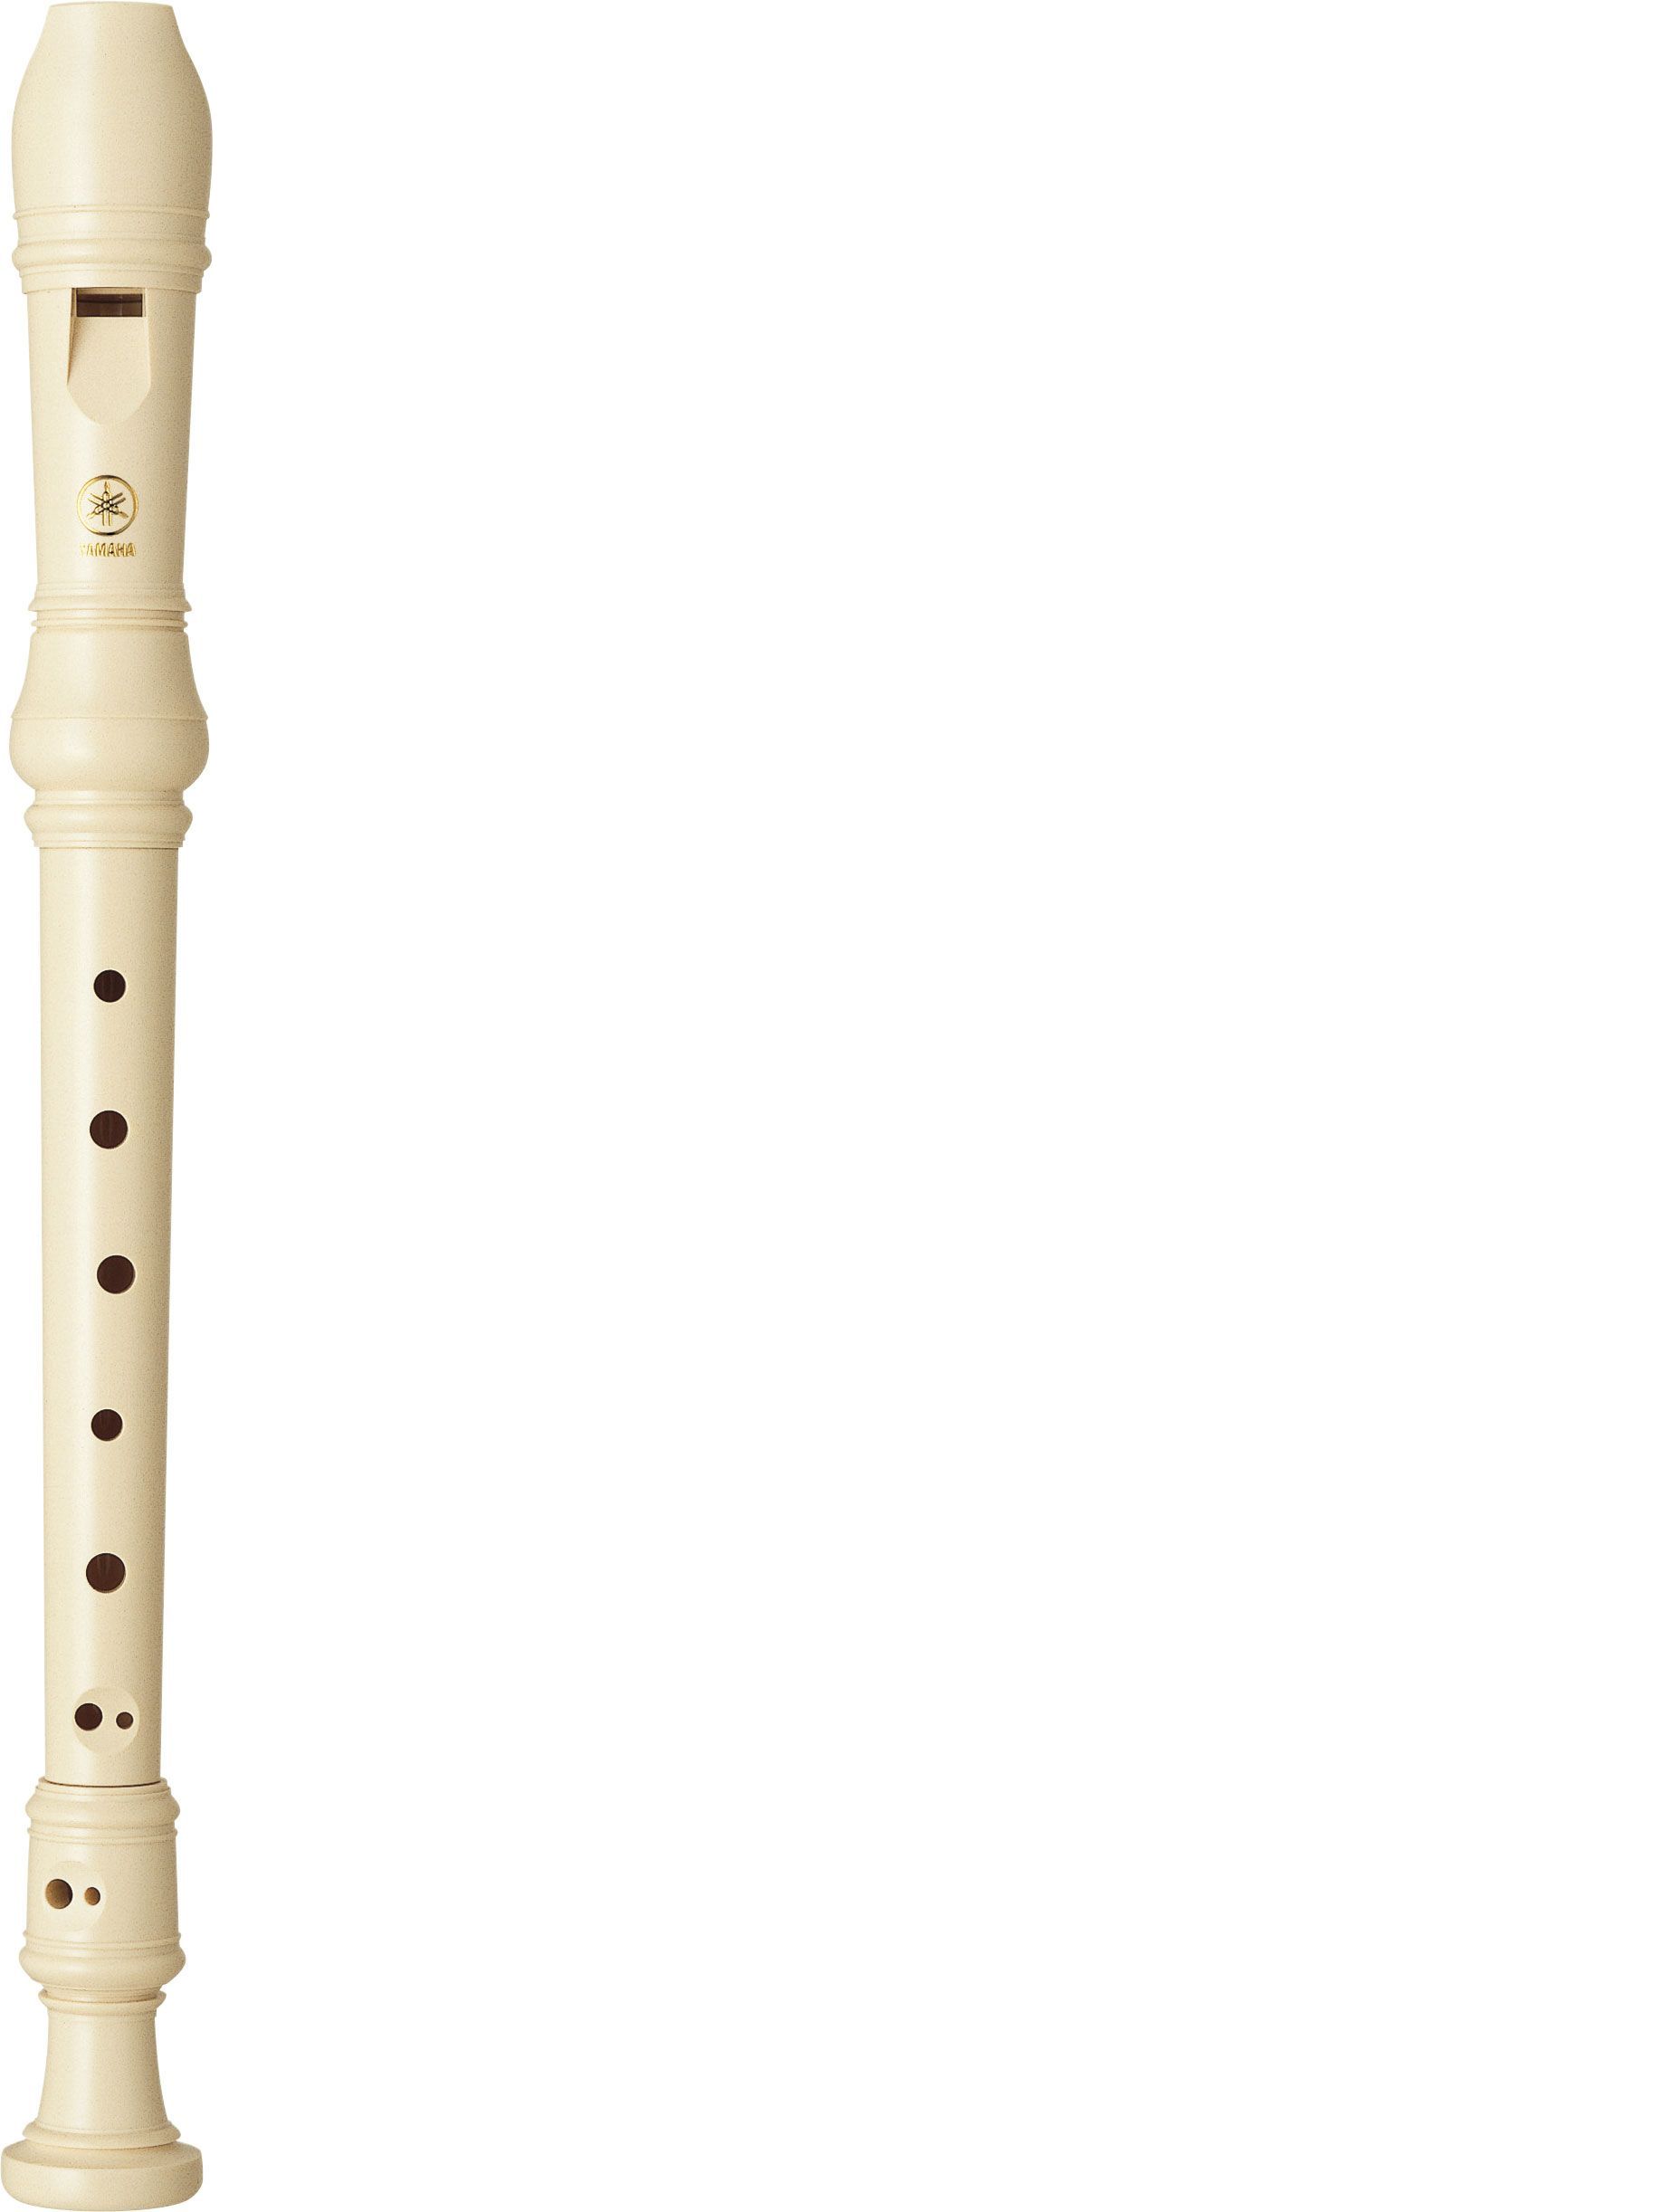 Flauta soprano dulce YAMAHA modelo YRS 24 B